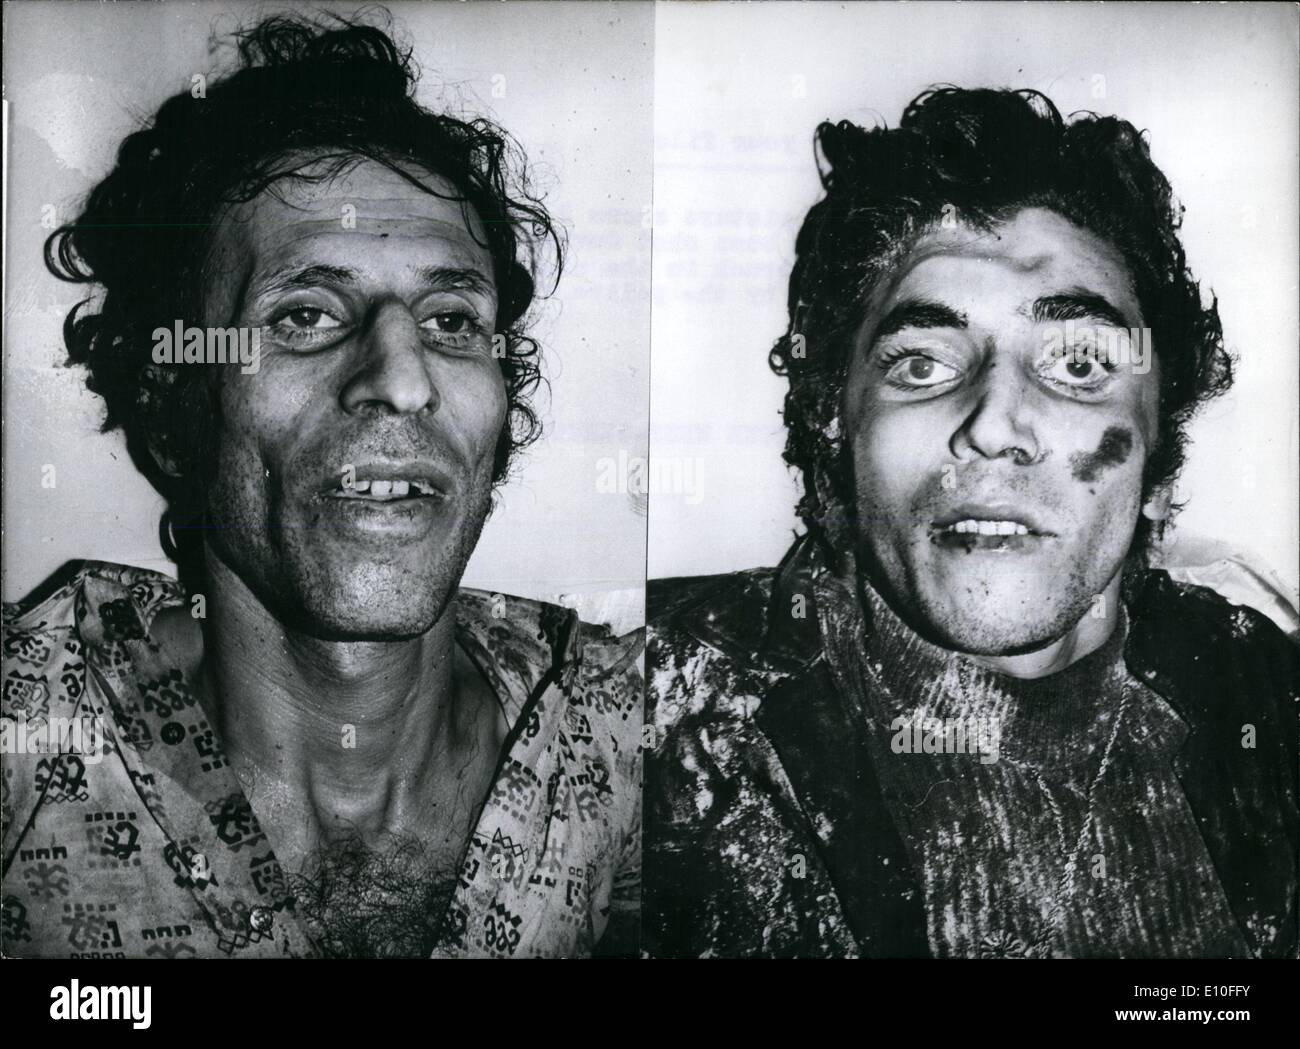 Sett. 09, 1972 - Per il vostro file: Foto mostra 2 dei terroristi arabi, che sono state scattate durante la lotta antincendio in Furstenfeldbruck nella notte dal 5 Settembre al 6° 1972 dalla polizia, che potrebbe non essere ancora identificati. Foto Stock